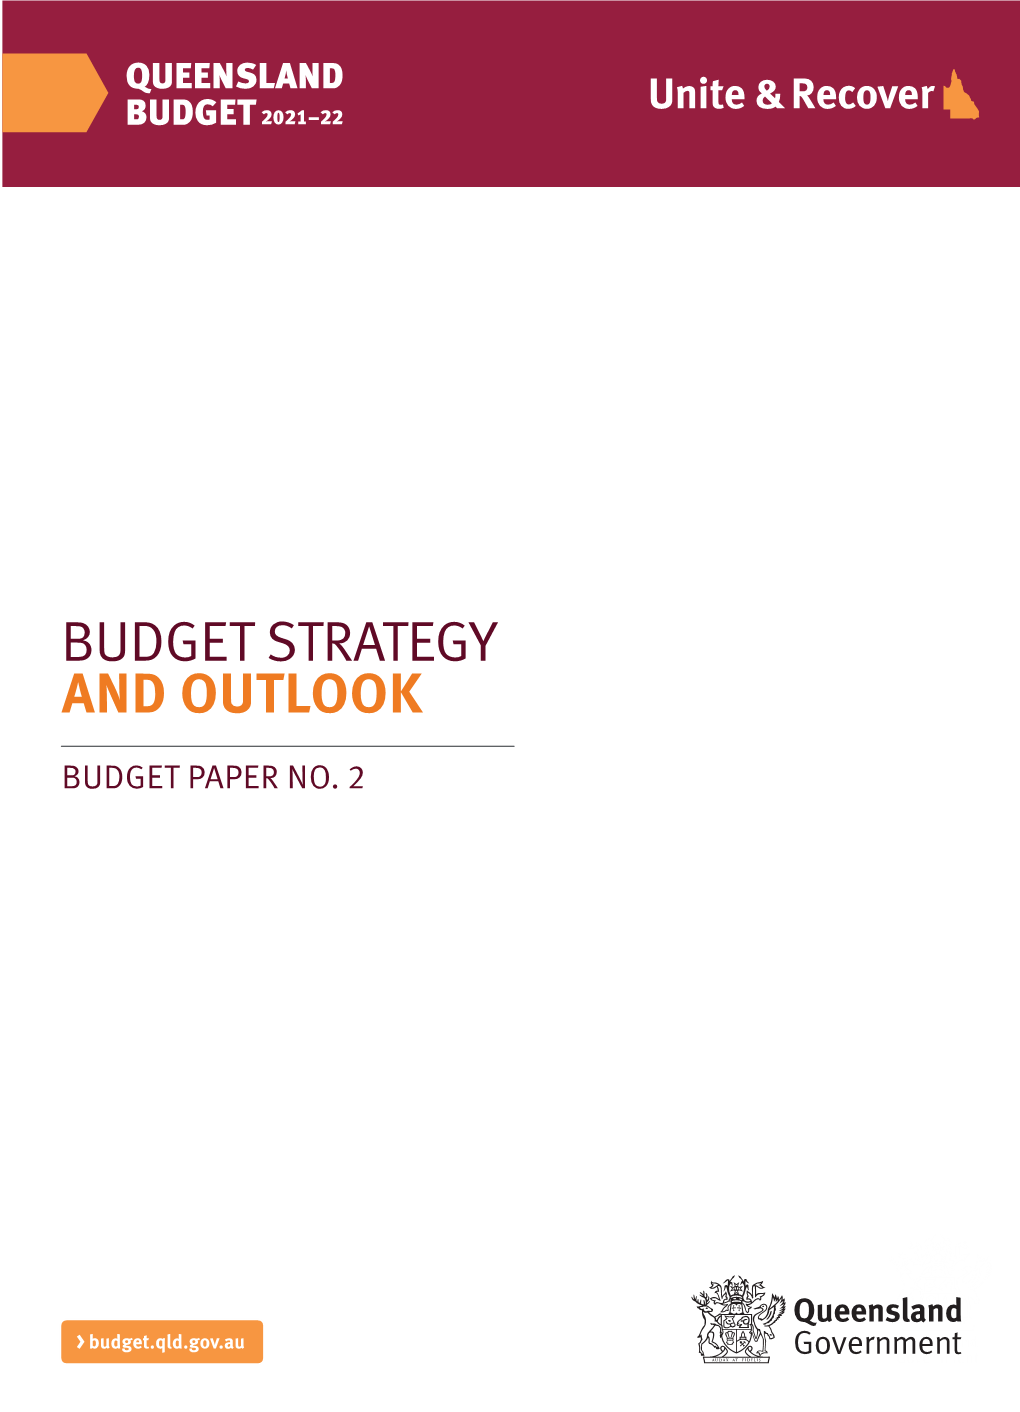 2020-21 Budget Paper 2